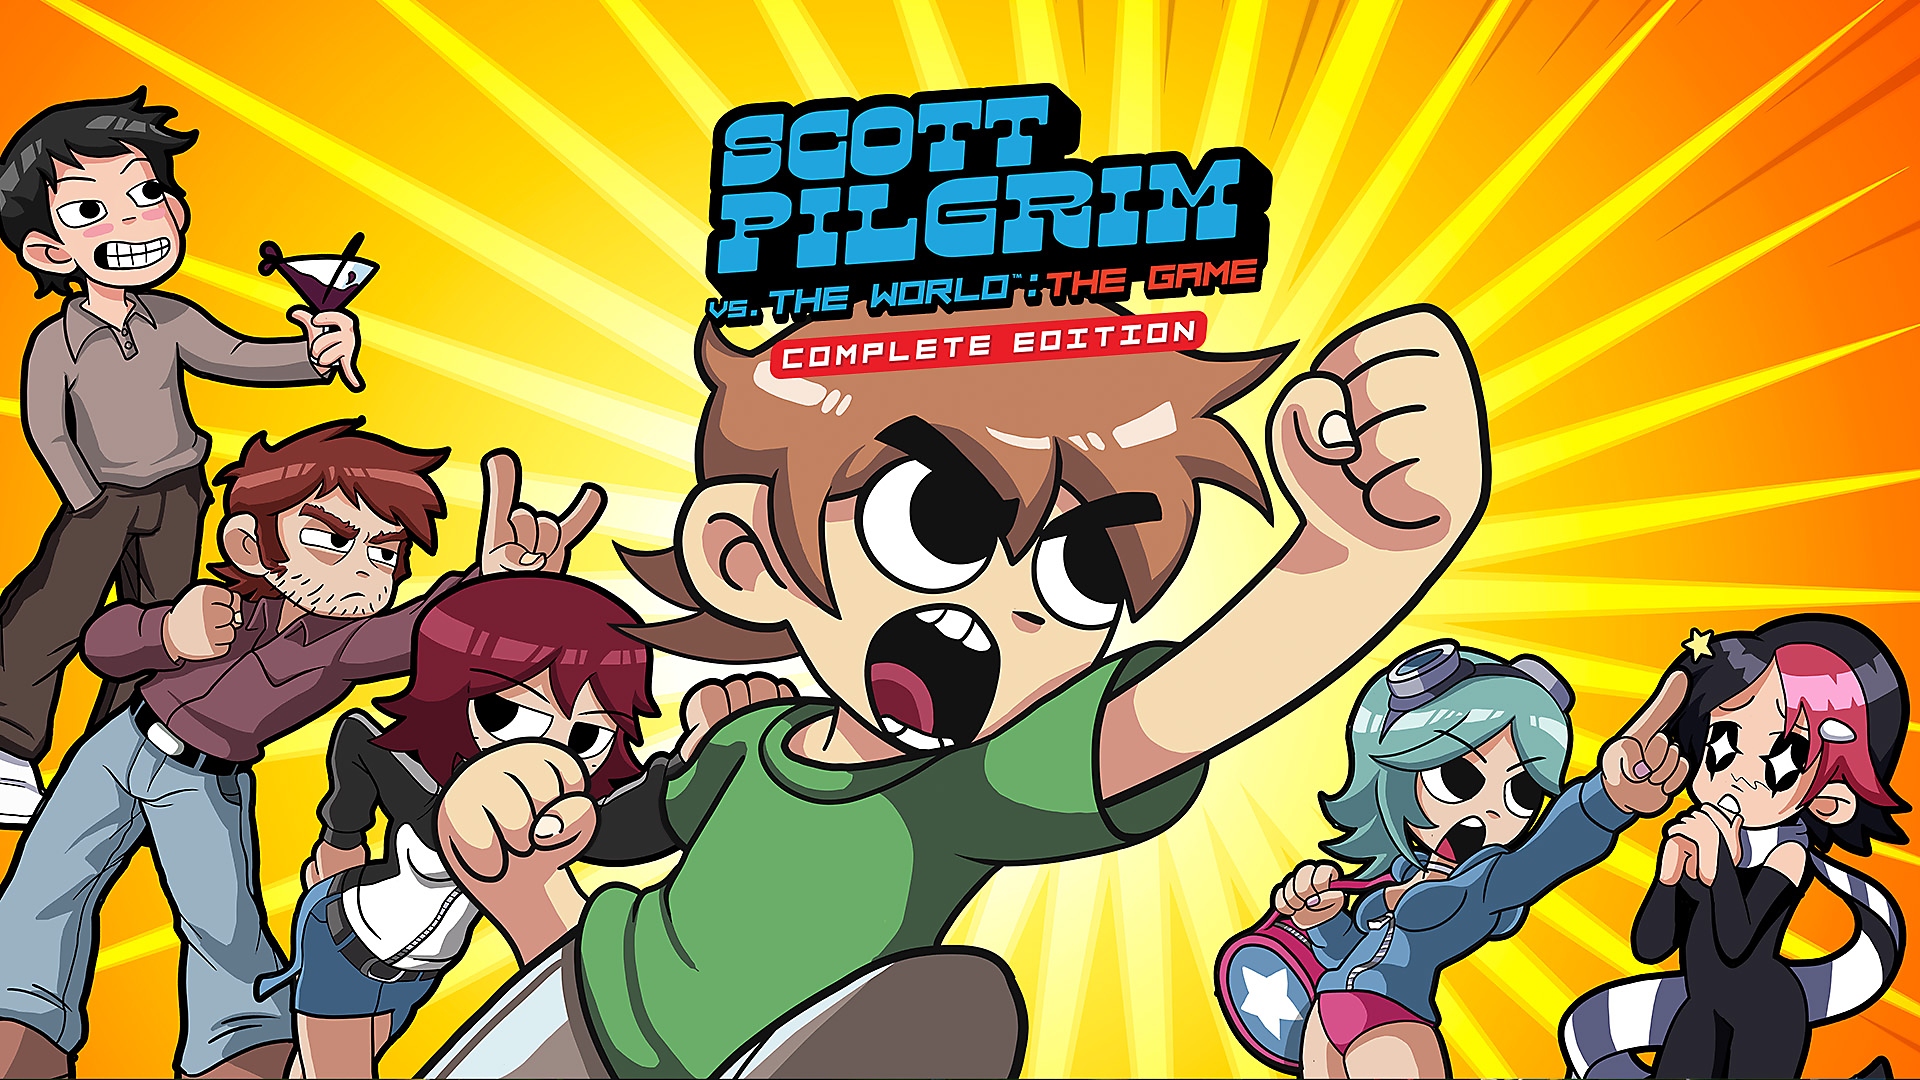 مقطع فيديو للعبة Scott Pilgrim